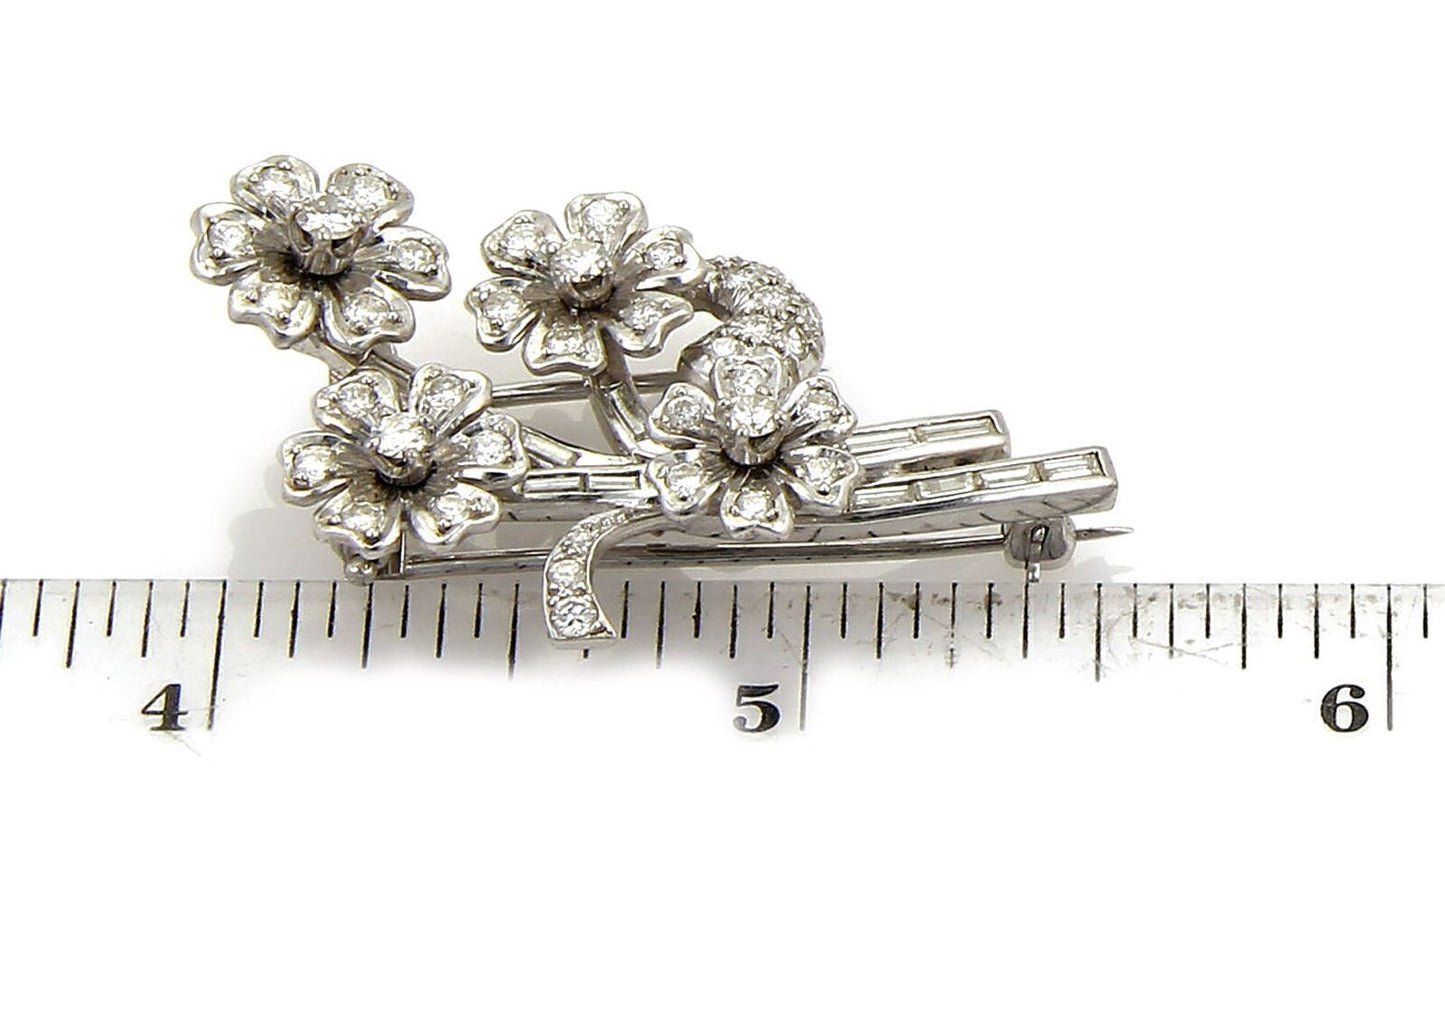 Platinum Diamond & Solid Spinning Floral Spring Brooch Pin